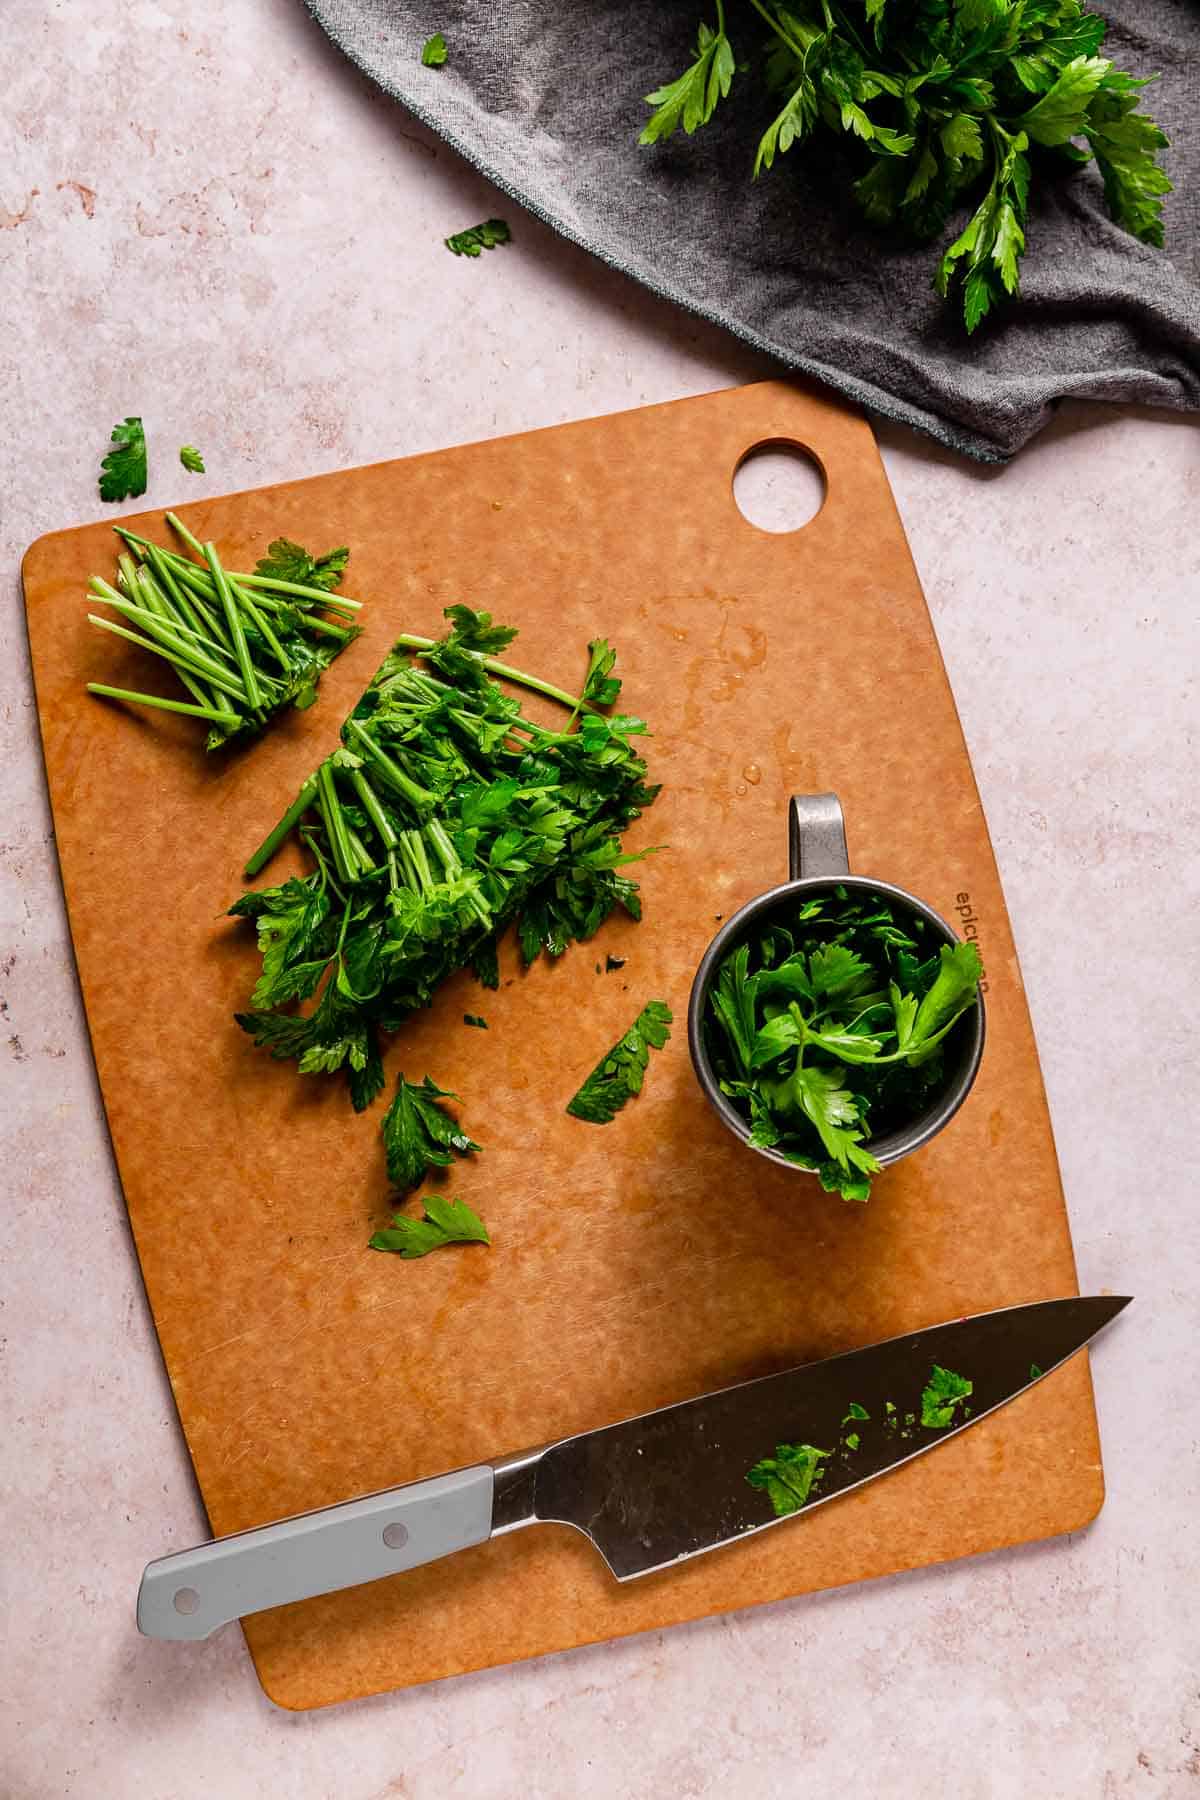 Chopped parsley on a cutting board.